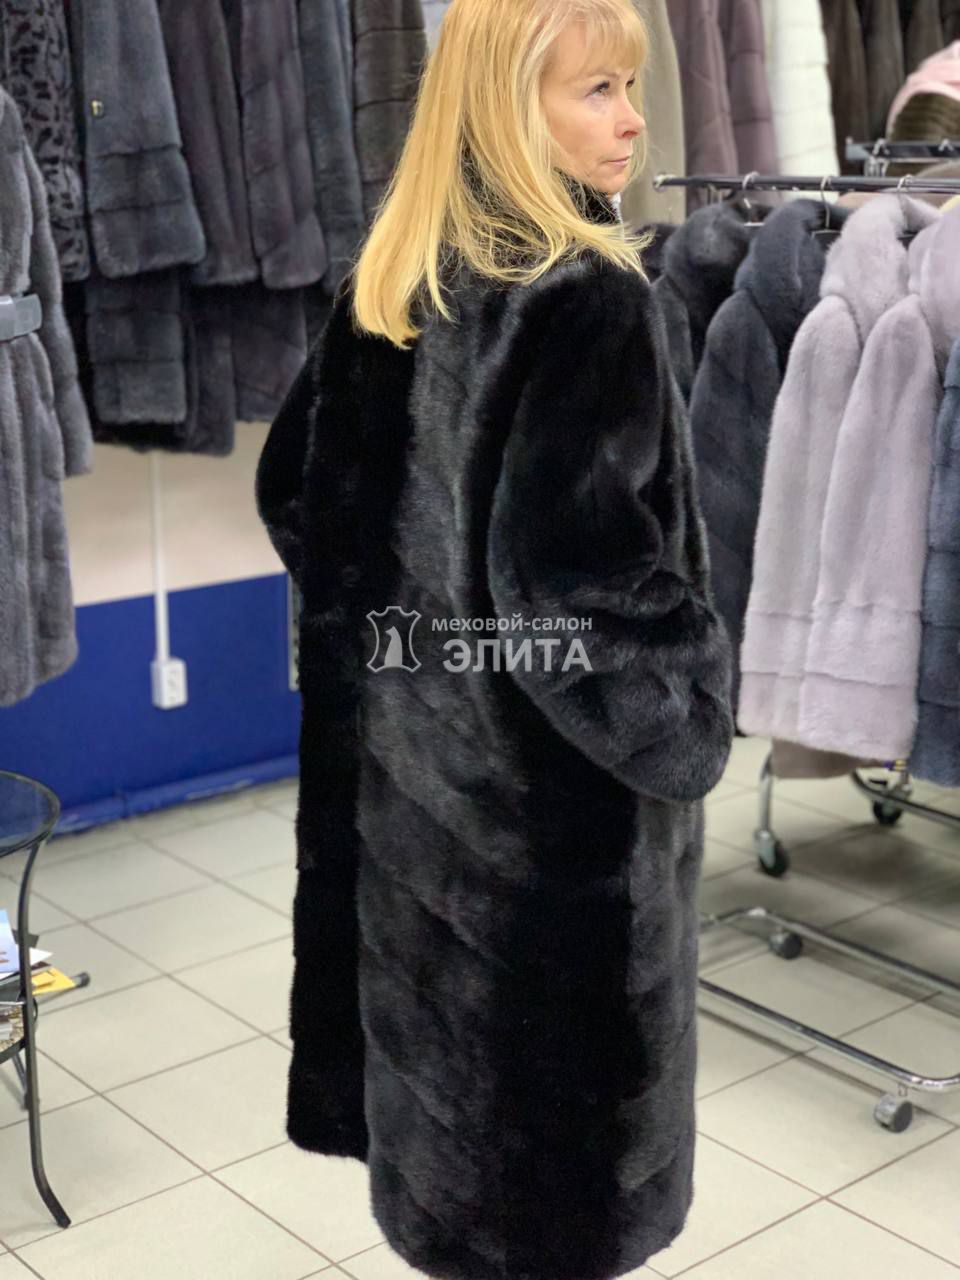 Пальто из норки S-18419 р-р 48-56, цена 150800 рублей в интернет-магазине кожи и меха ЭЛИТА. Вид 2